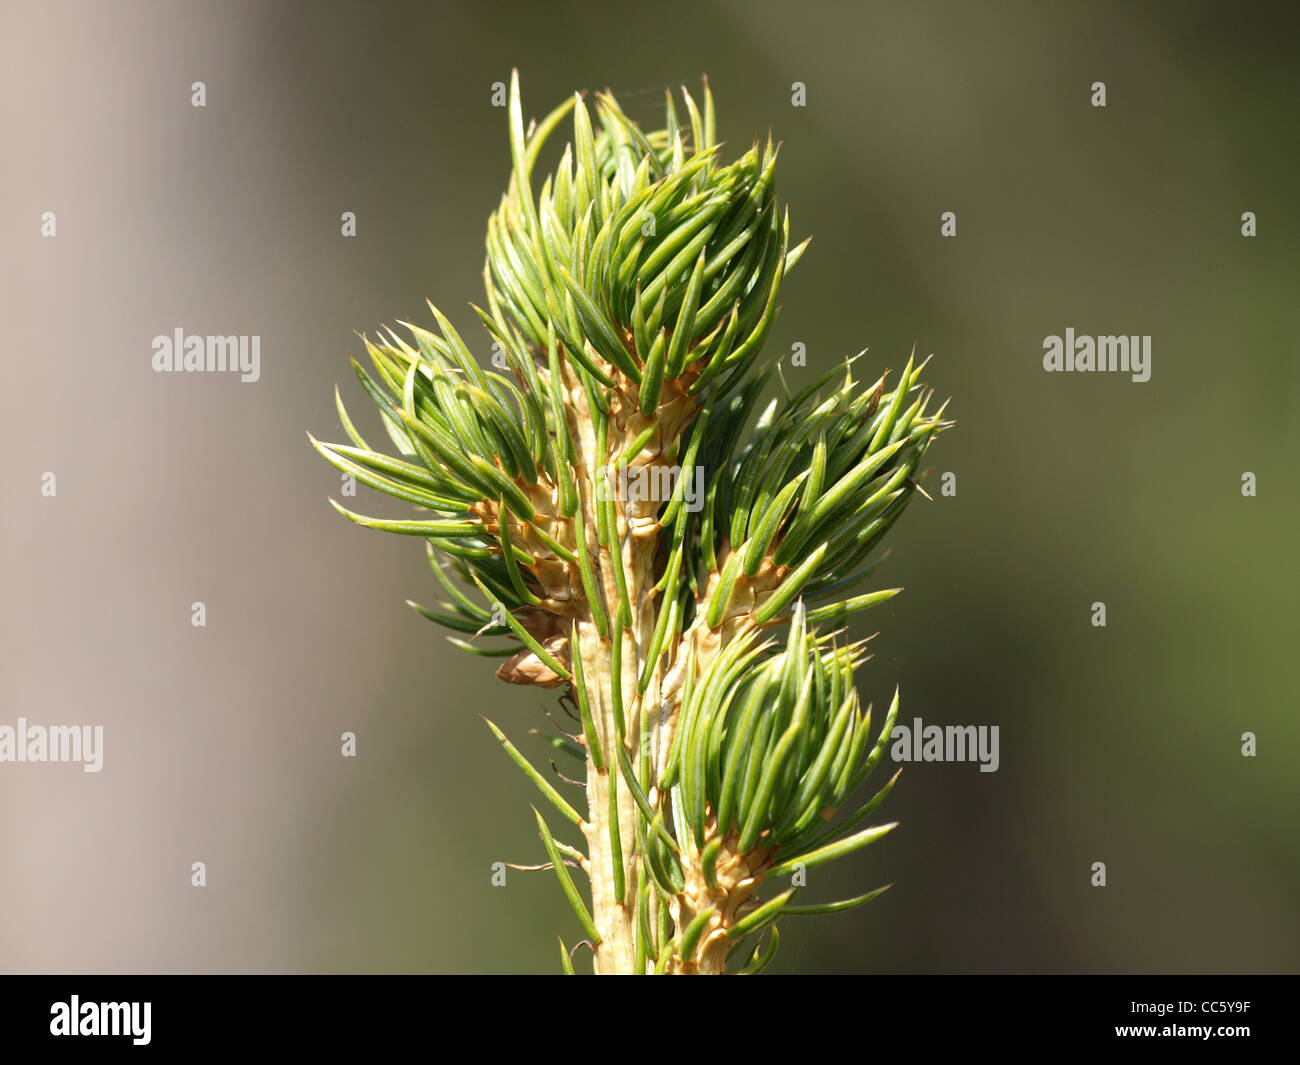 Norway spruce / Picea abies / Gemeine Fichte Stock Photo